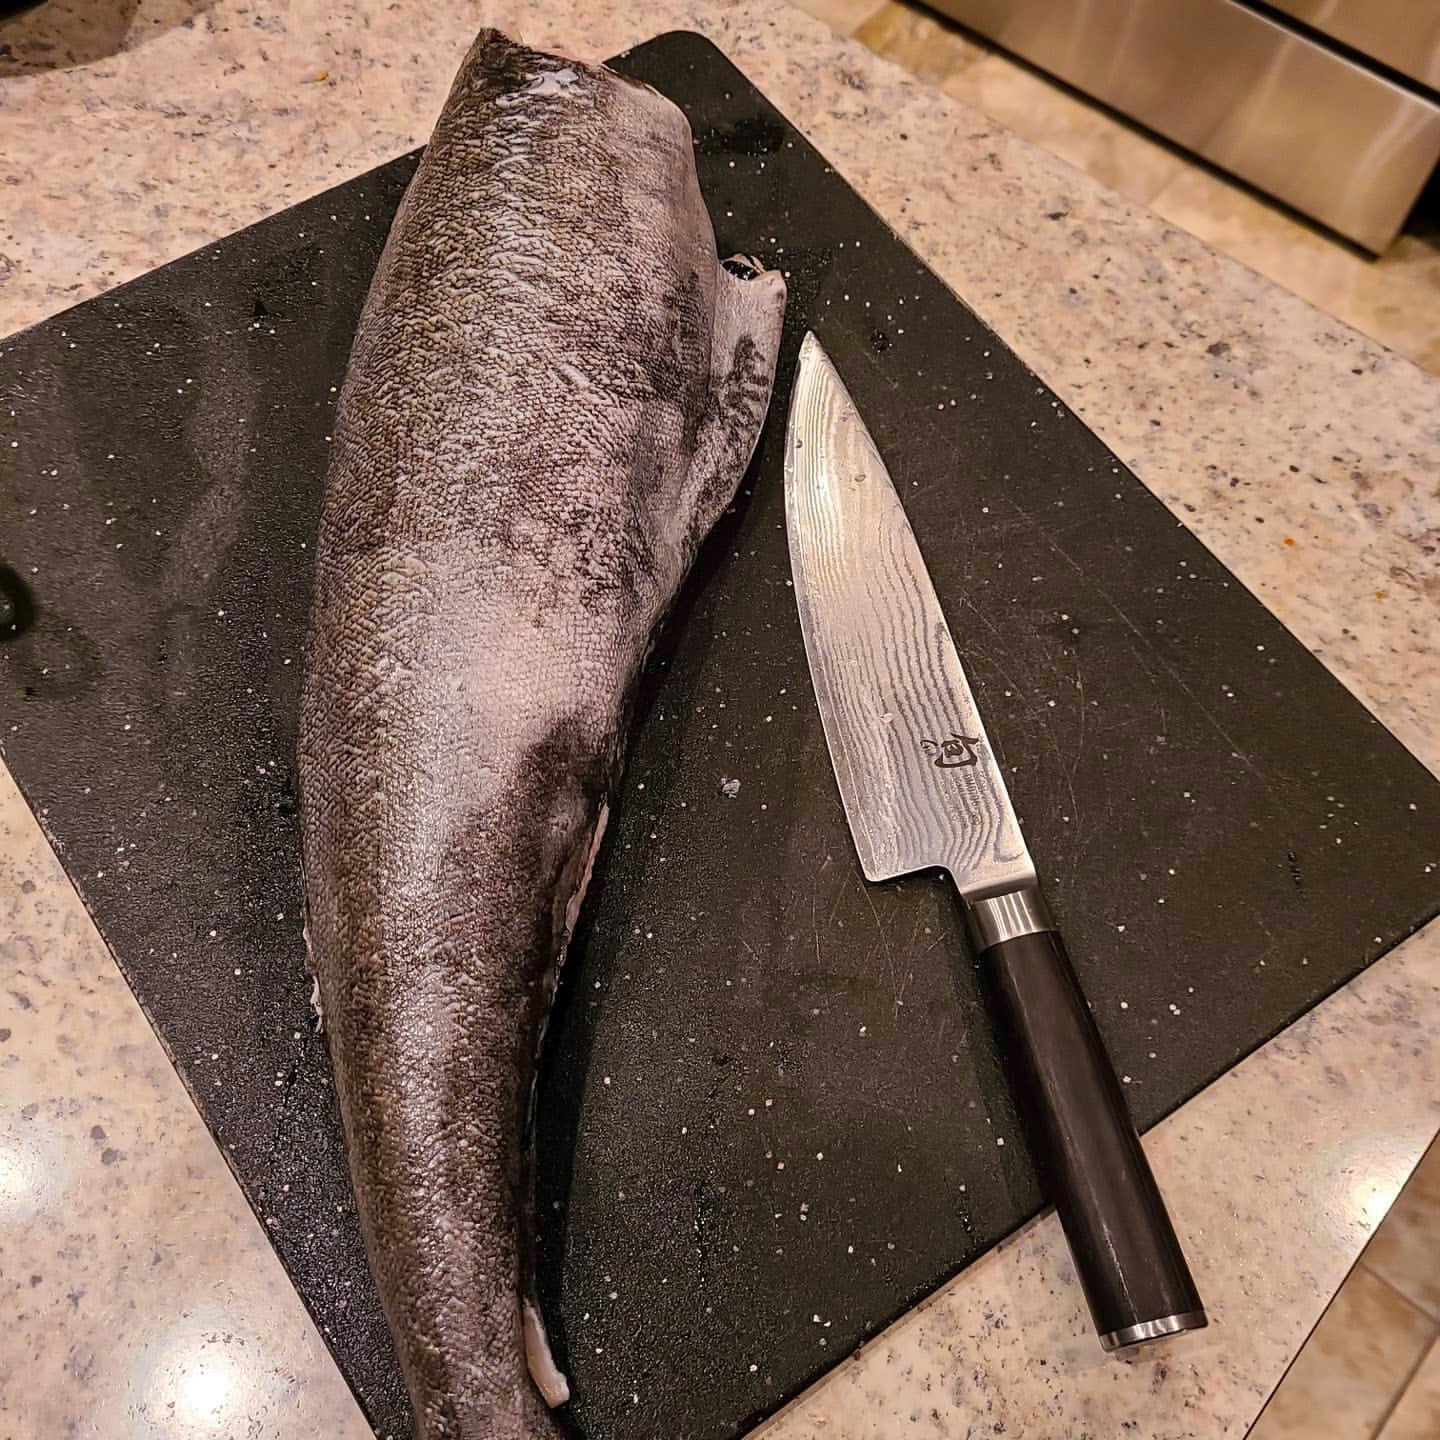 Black Cod - Large Fillet (Nobu Cut)